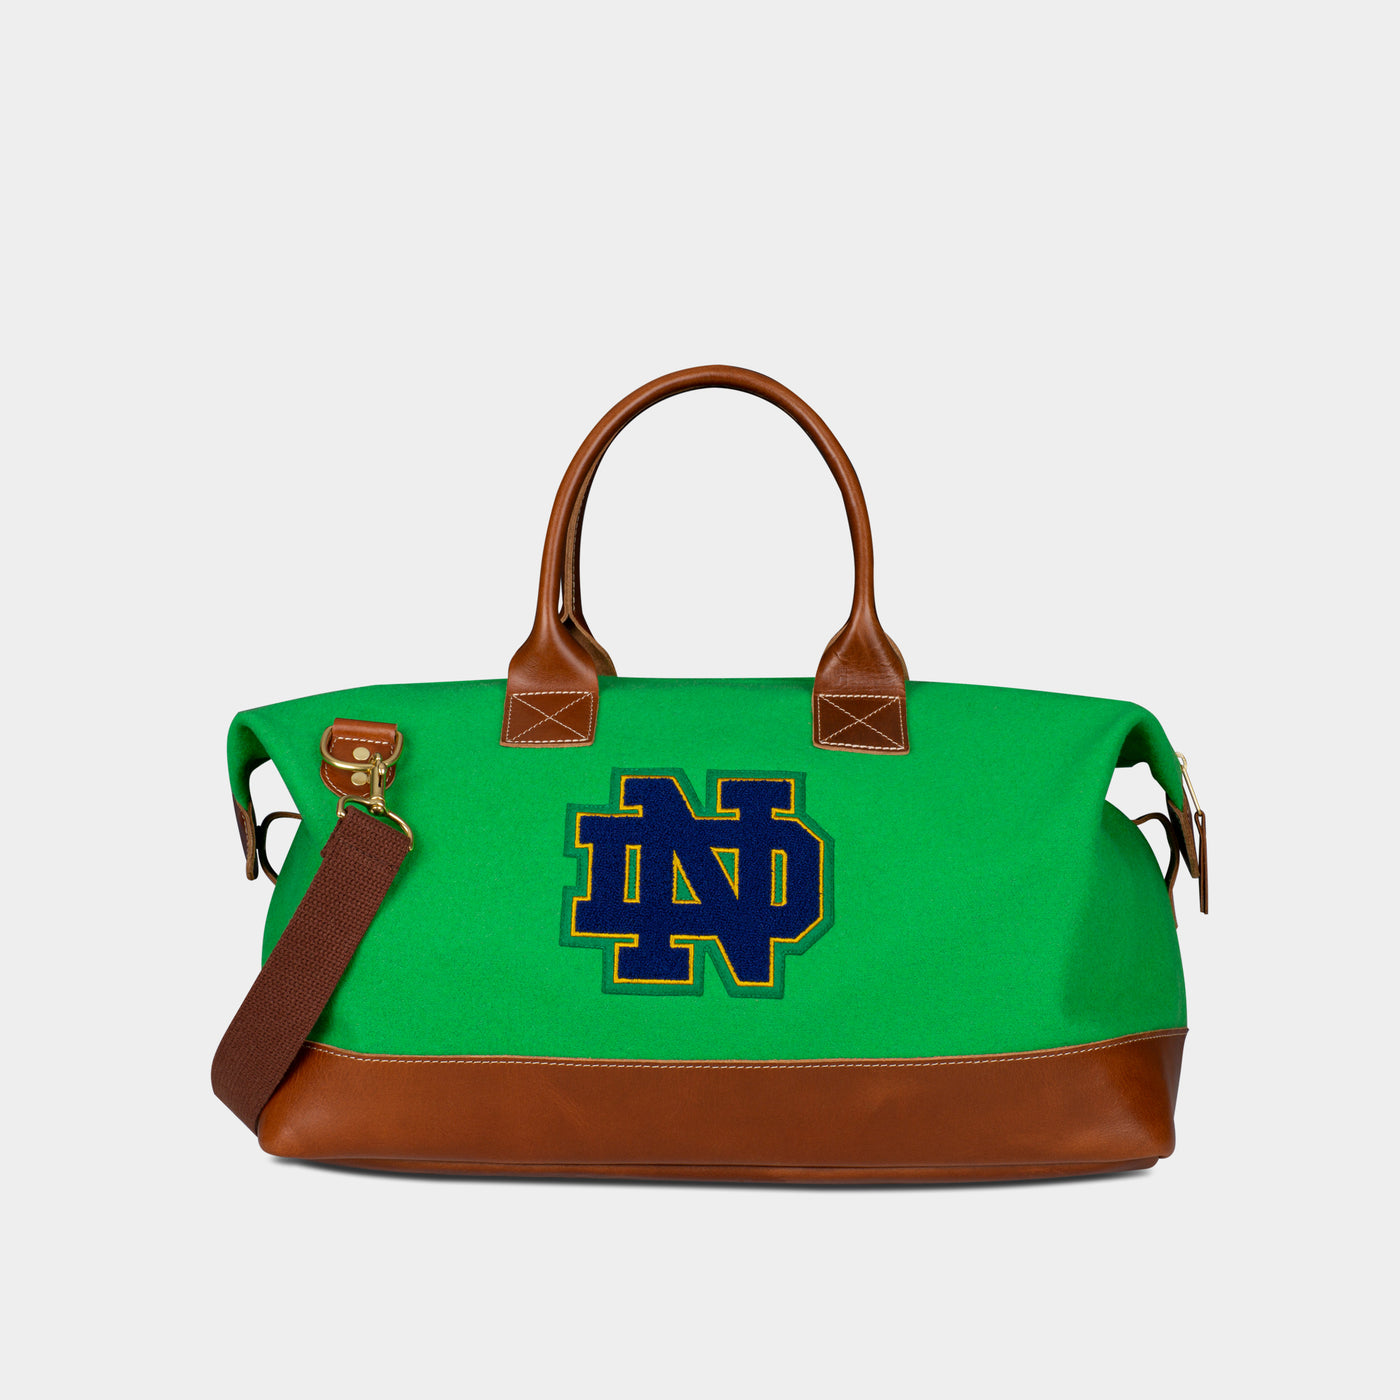 Notre Dame Fighting Irish "ND" Weekender Duffle Bag